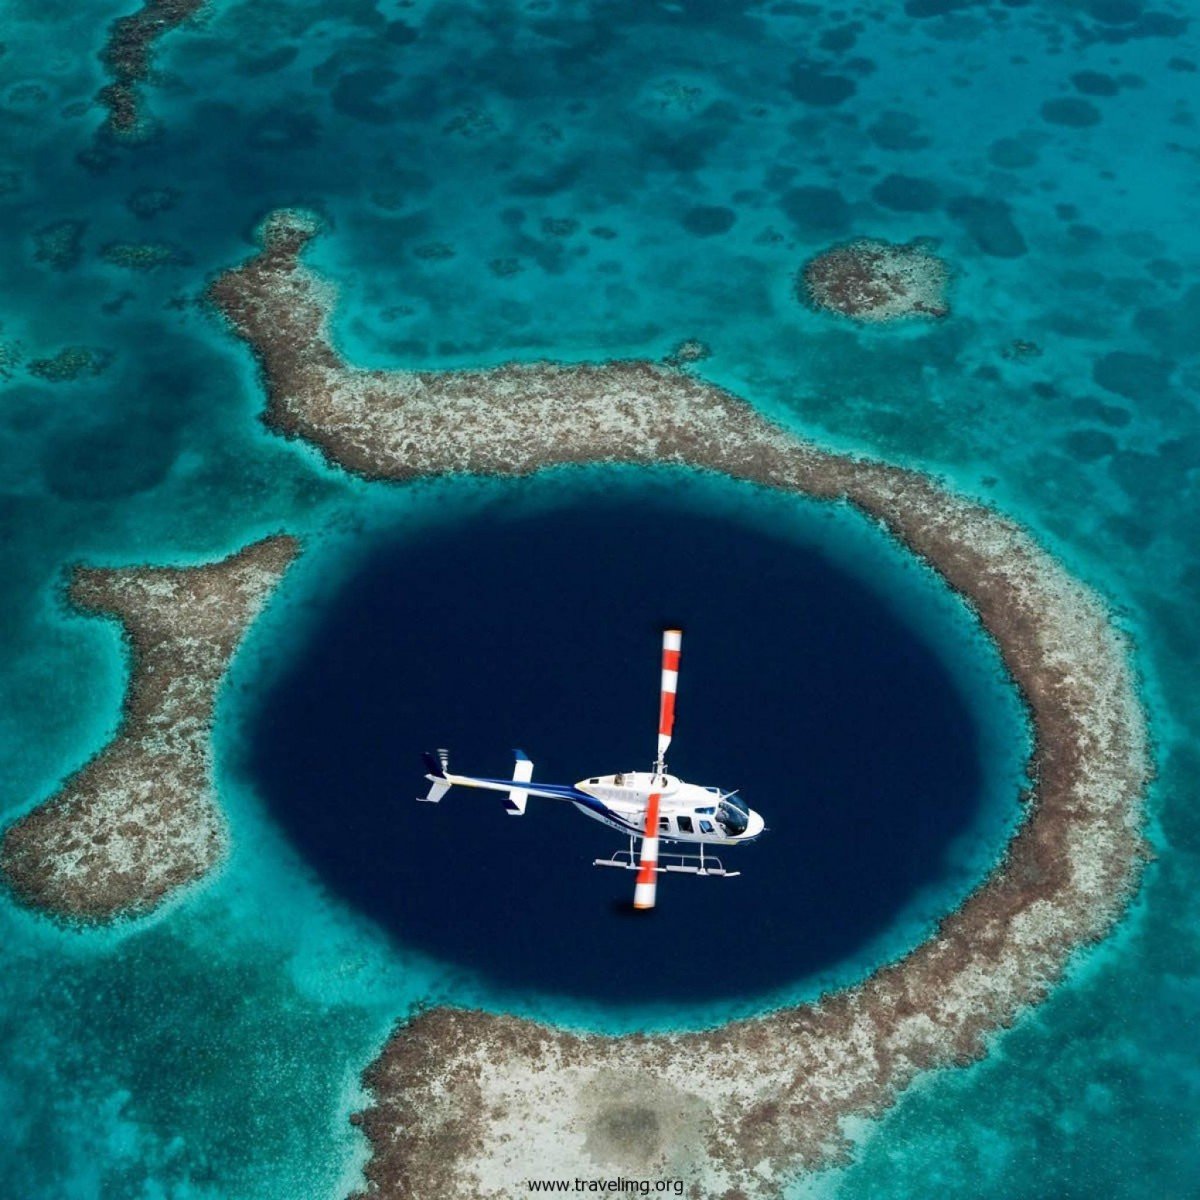 5 Amazing Blue Hole Photos - Belize Blue Hole!